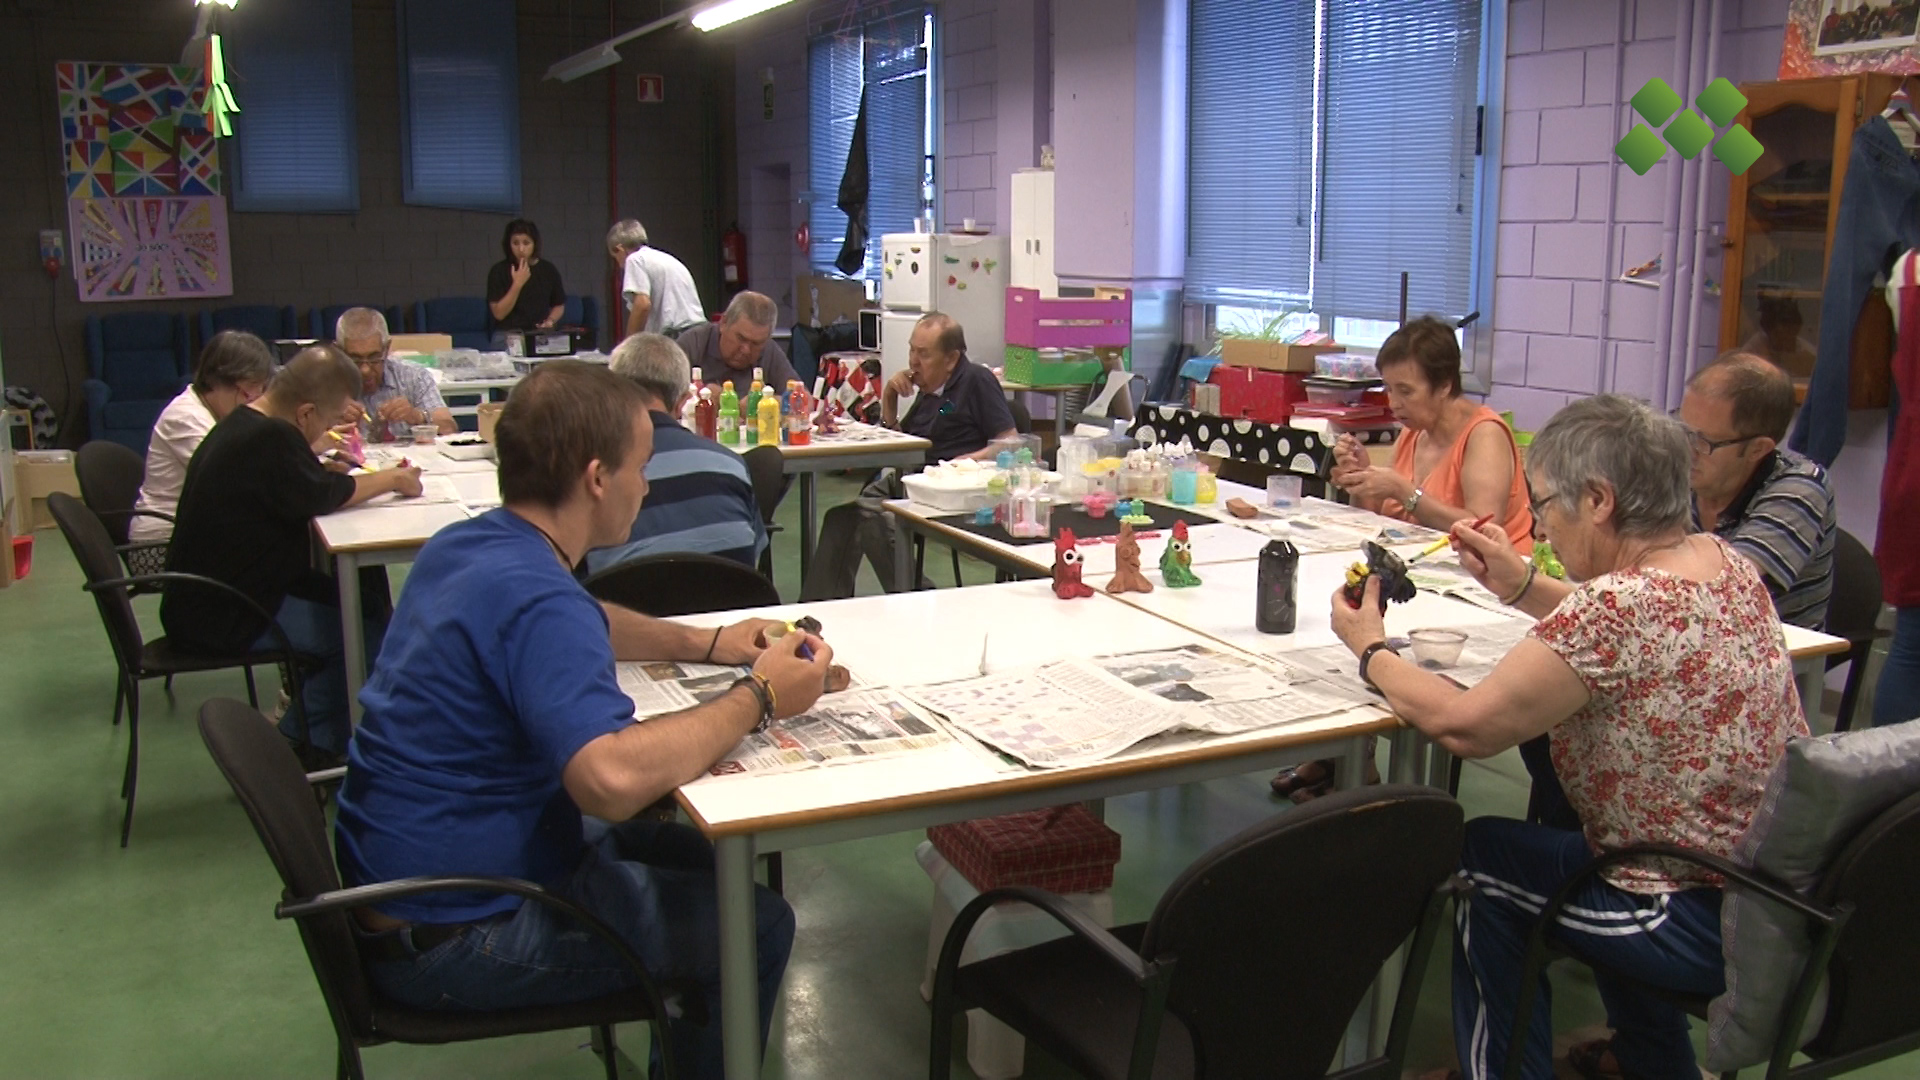 El taller ACUDAM compleix 40 anys treballant per normalitzar la vida de les persones amb diferents discapacitats